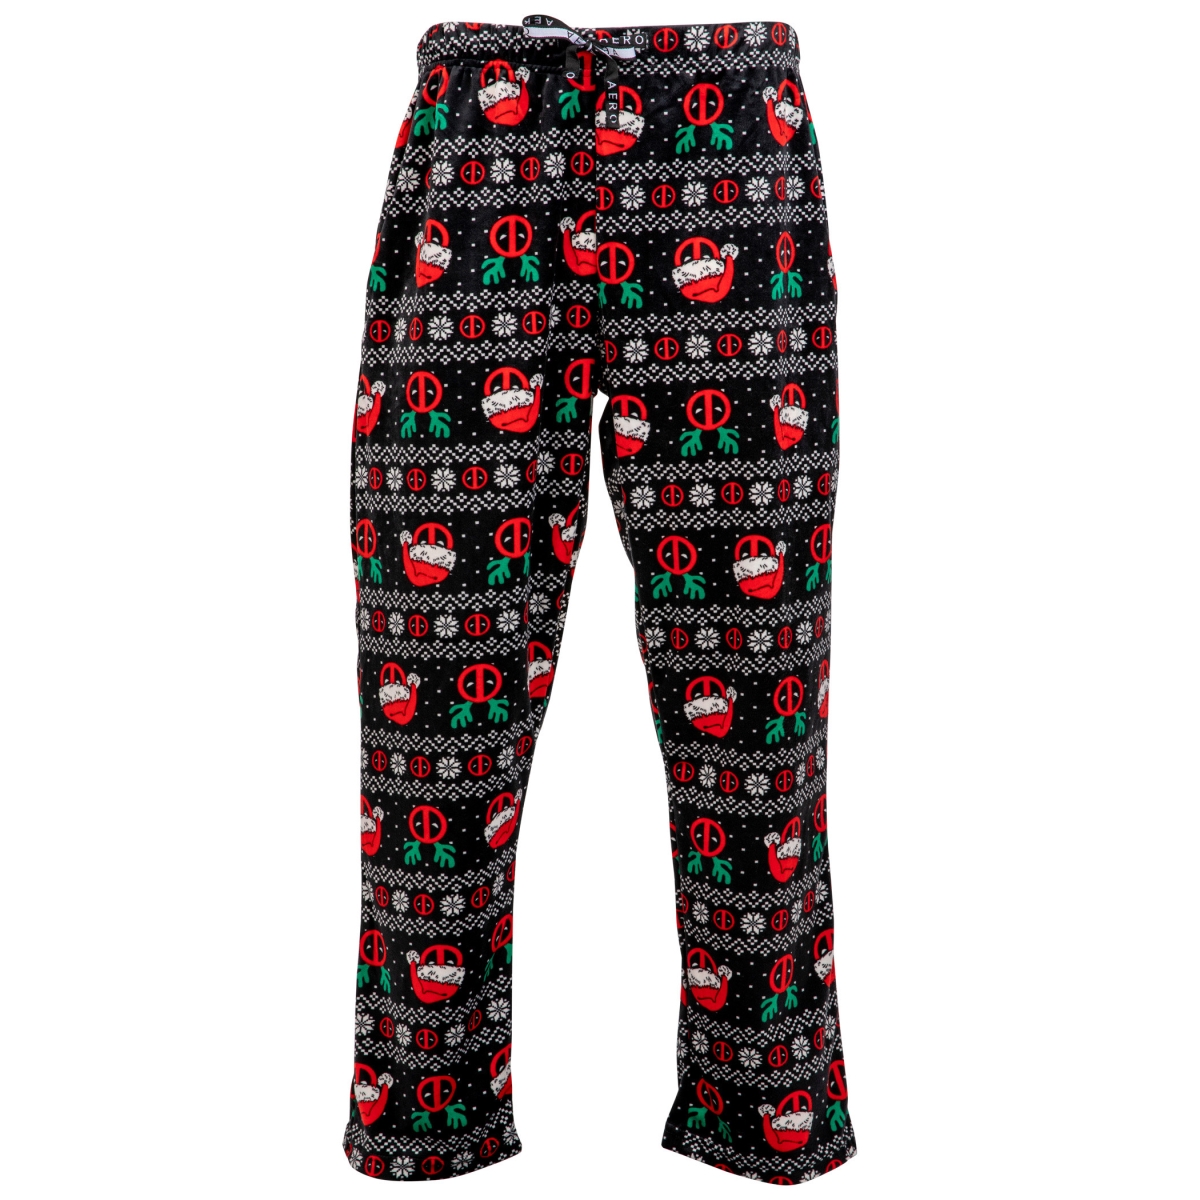 Picture of Deadpool 813502-medium 32-34 Unisex Christmas Ugly Sweater Fleece Sleep Pants, Black - Medium 32-34